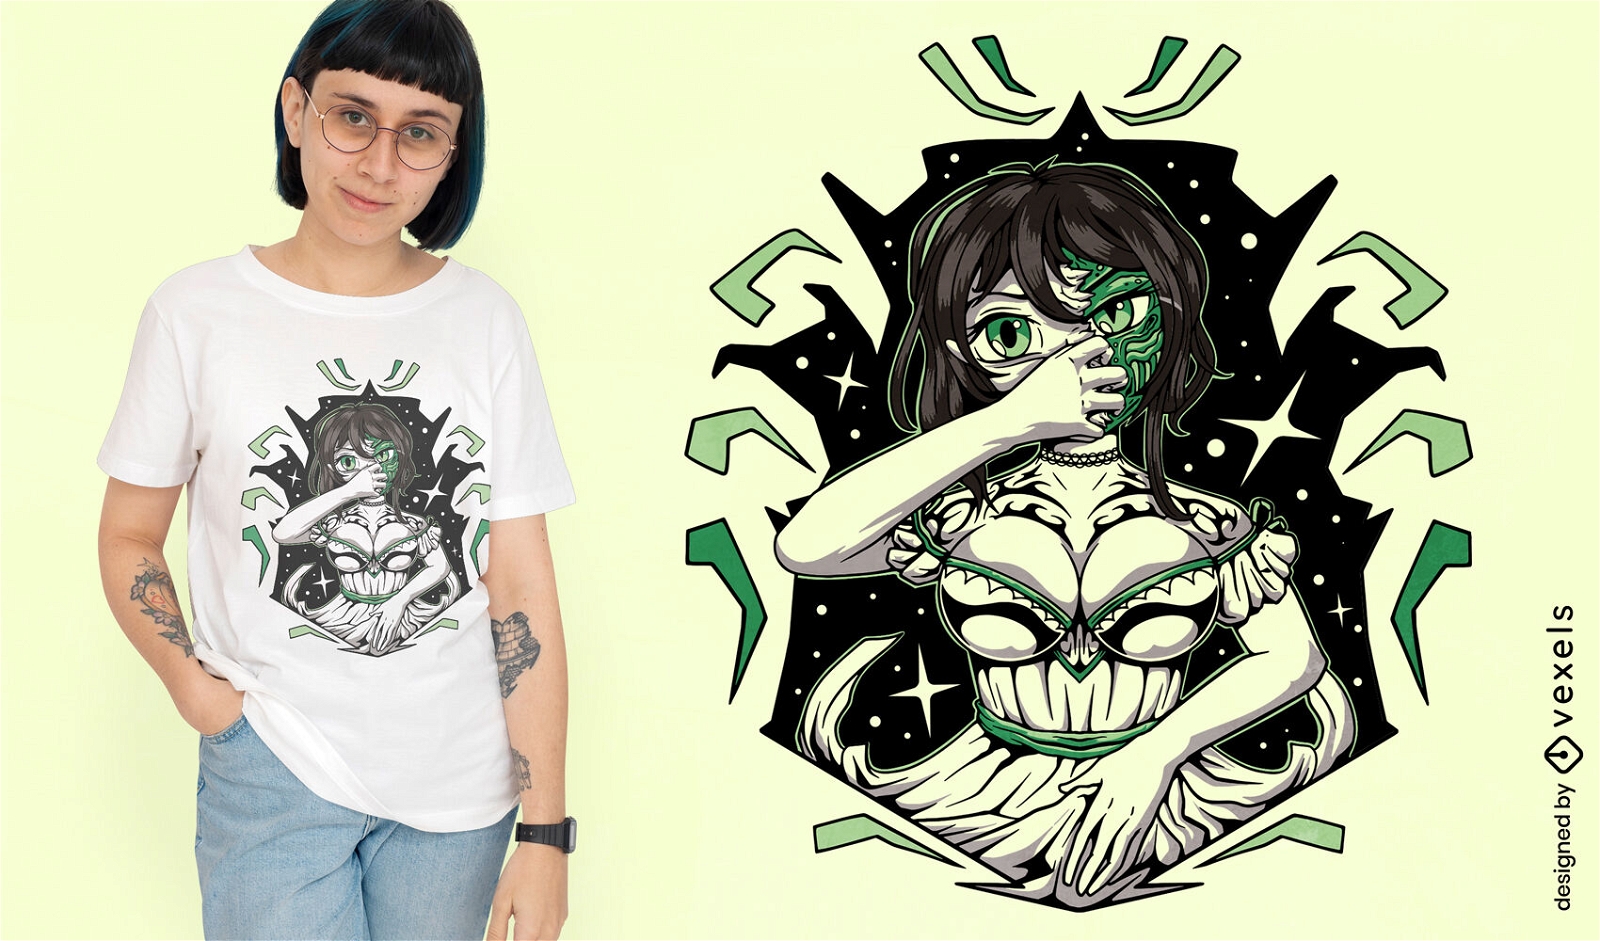 Anime demon girl monster t-shirt design